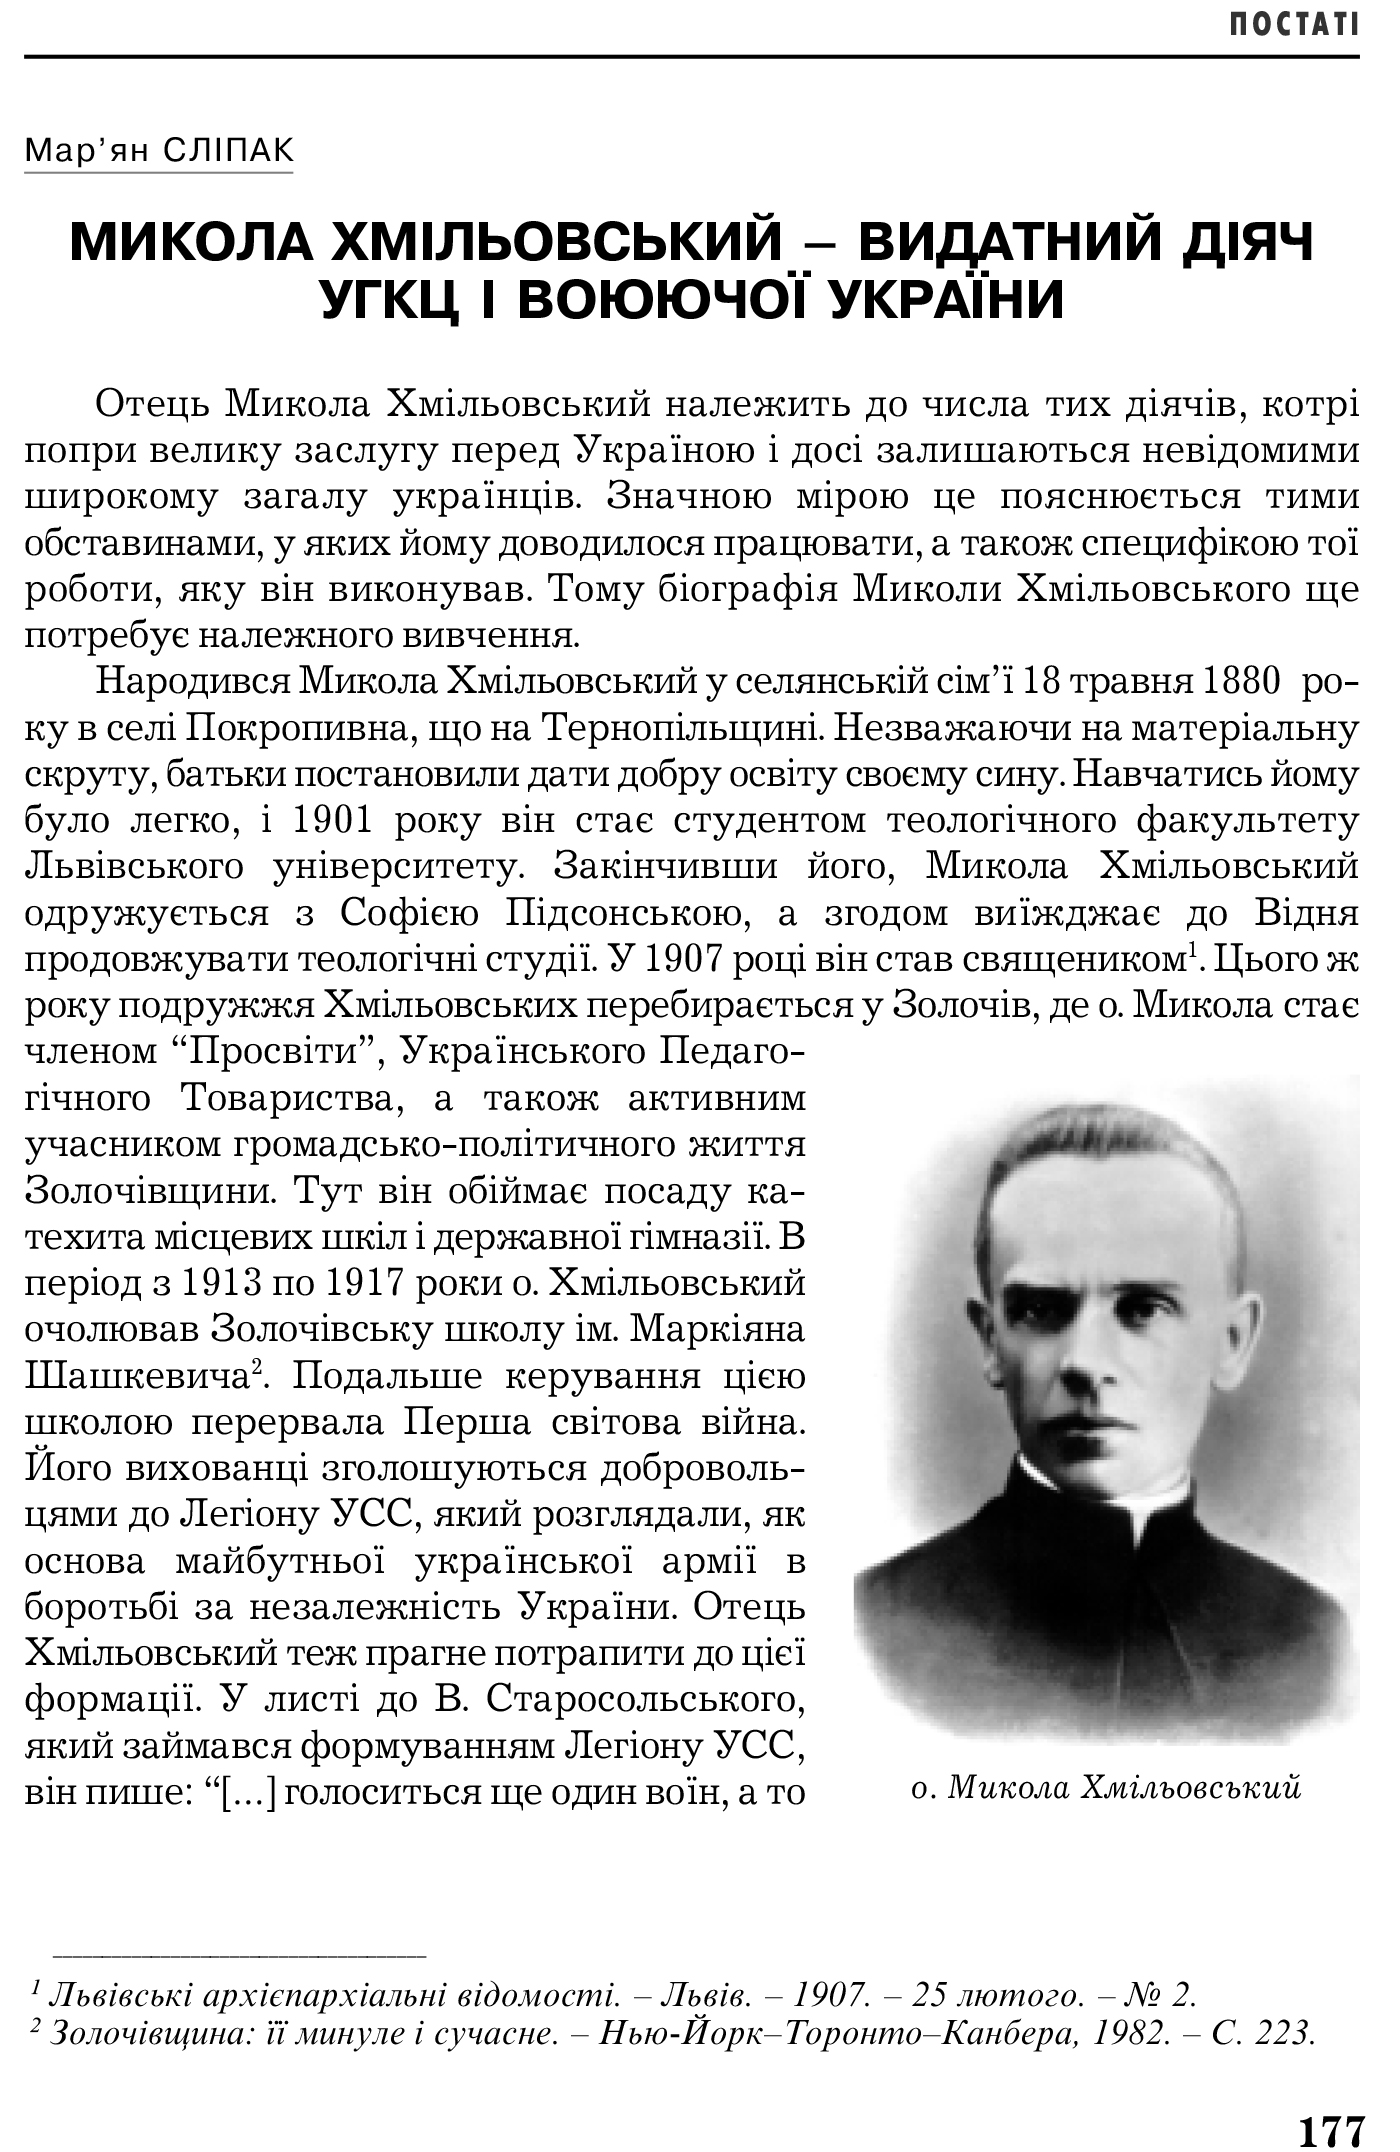 Український визвольний рух №5, ст. 177 - 182